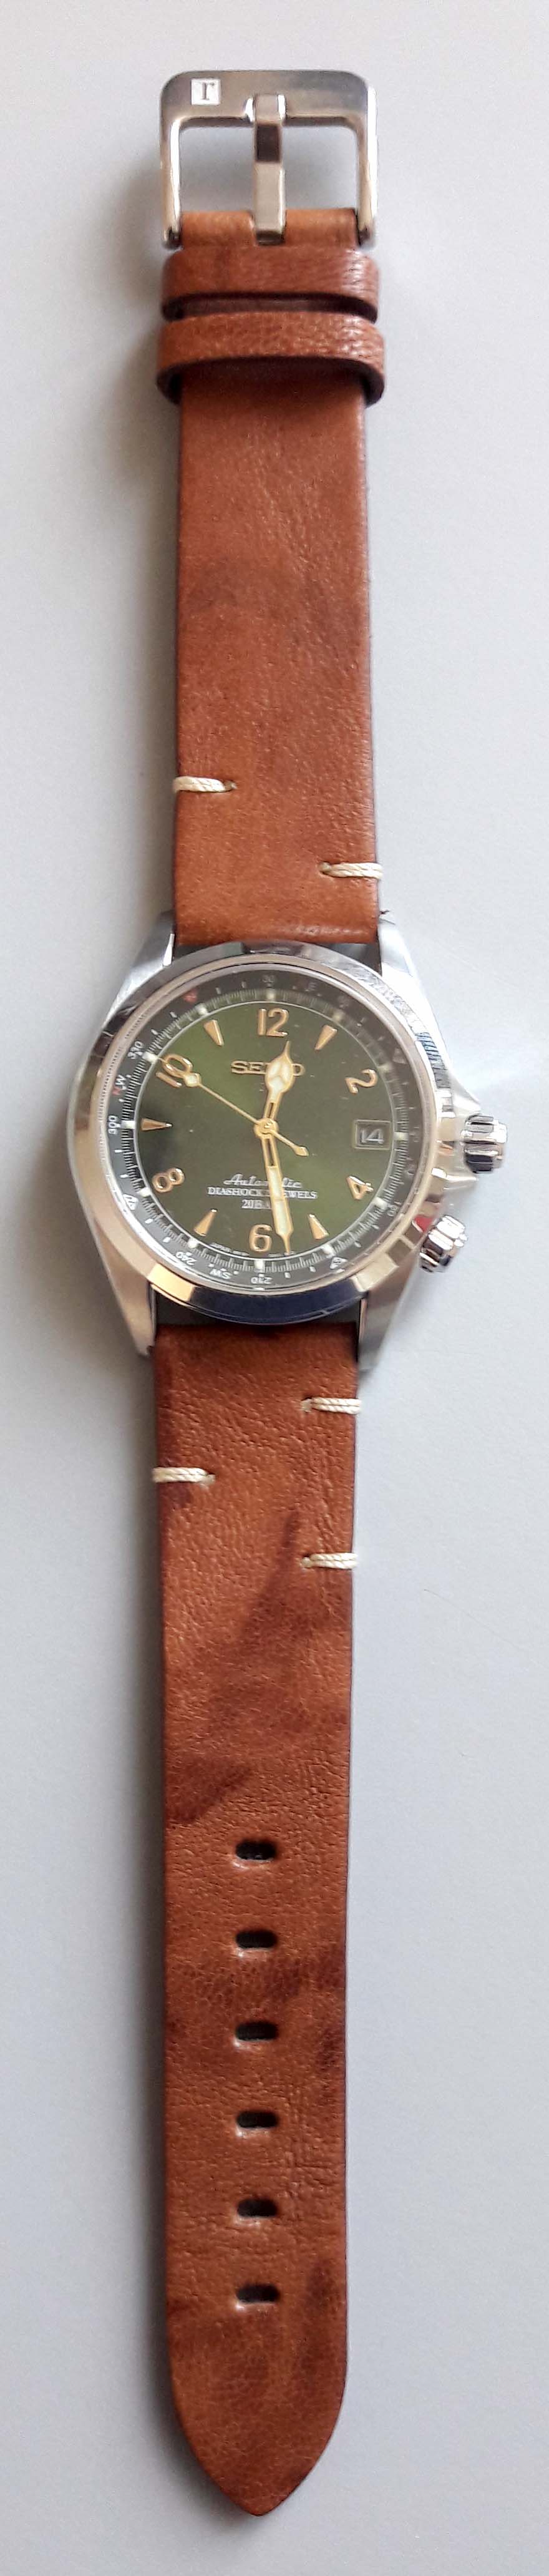 montre - cherche une montre fond vert et de belles aiguilles - Page 4 Colare10